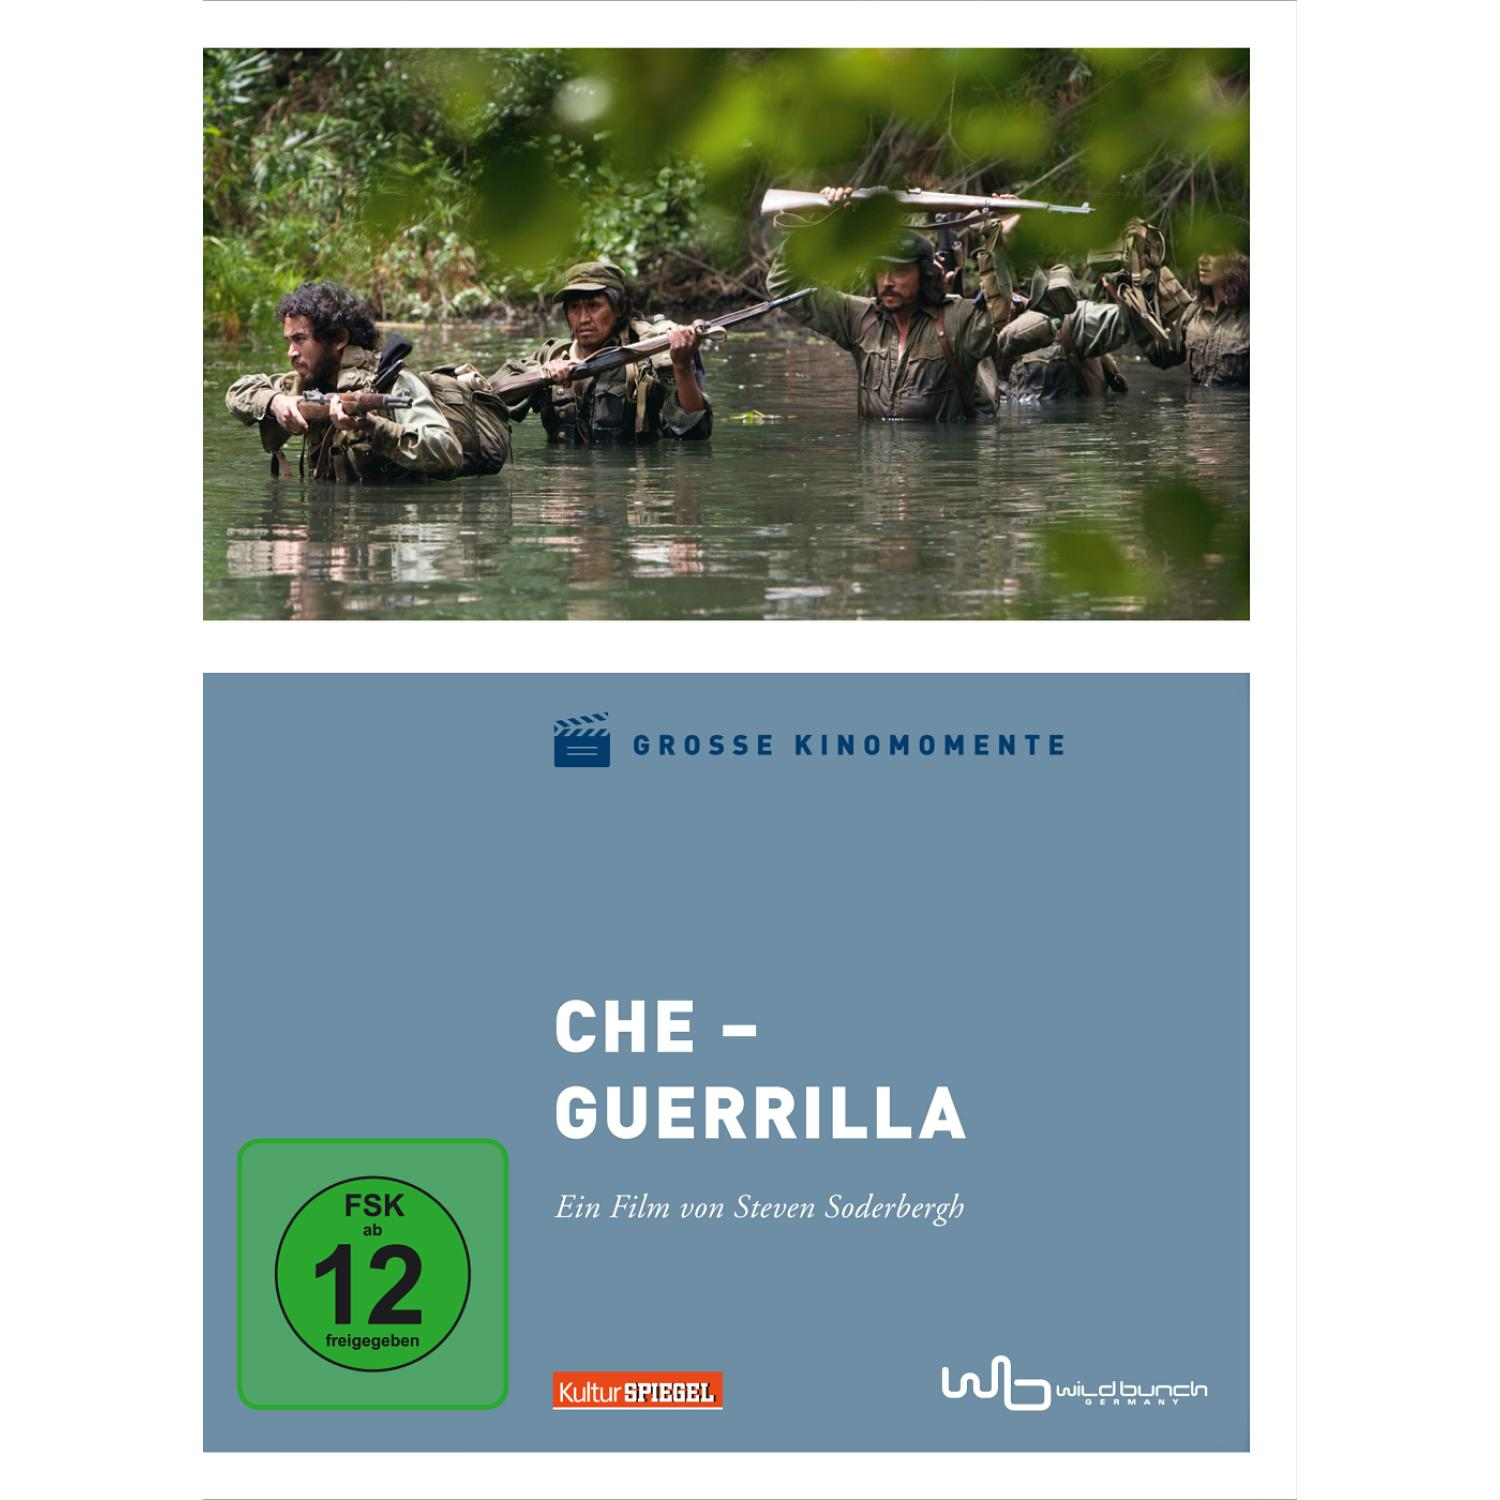 CHE-2 GUERRILLA (GROSSE KINOMOMENTE DVD 2)